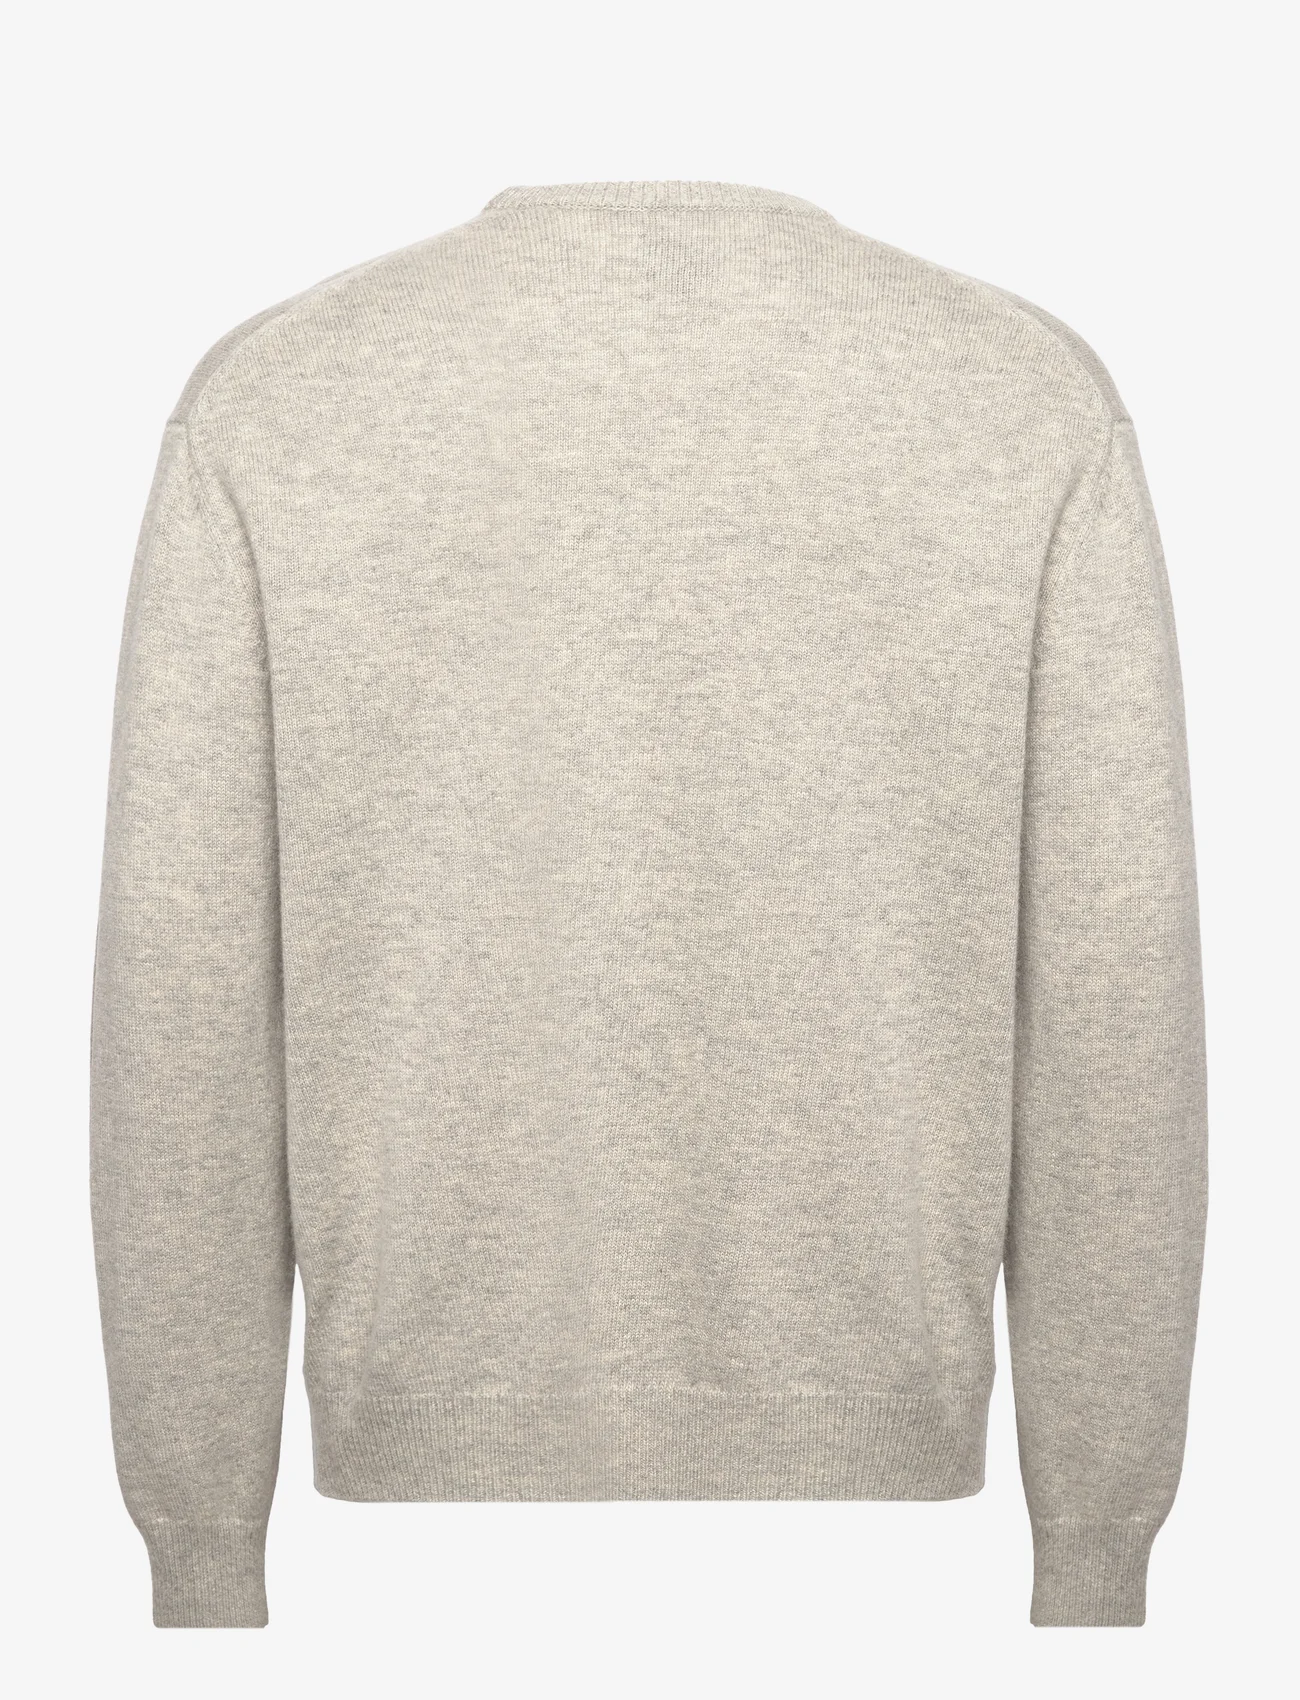 Tonsure - Philip knit crewneck - Ümmarguse kaelusega kudumid - light grey melange - 1